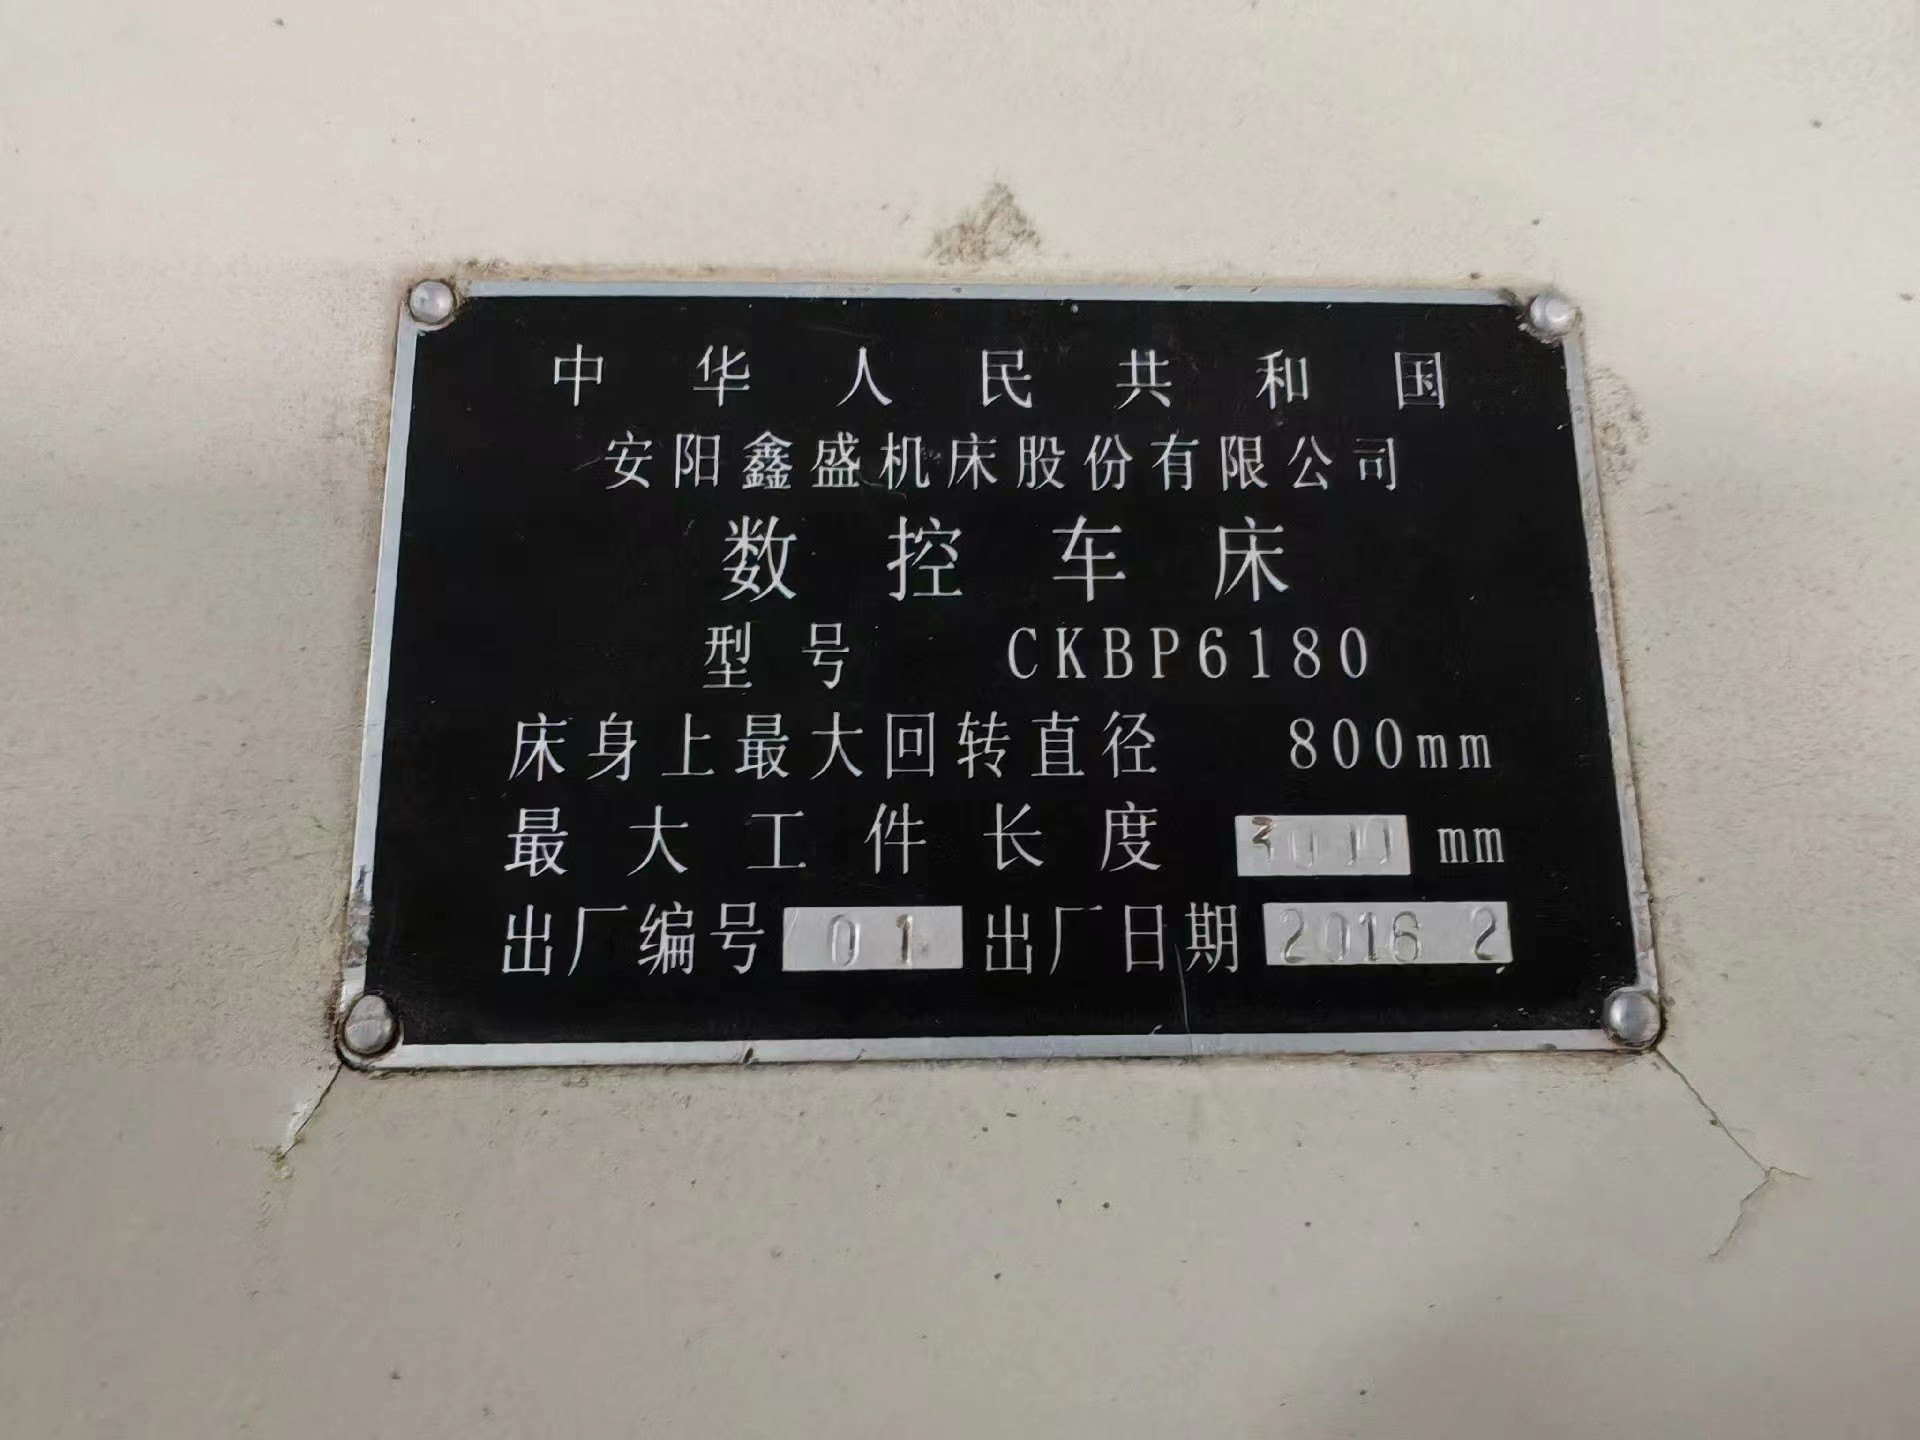 重型安阳鑫盛CKBP61803000导轨600价格便宜